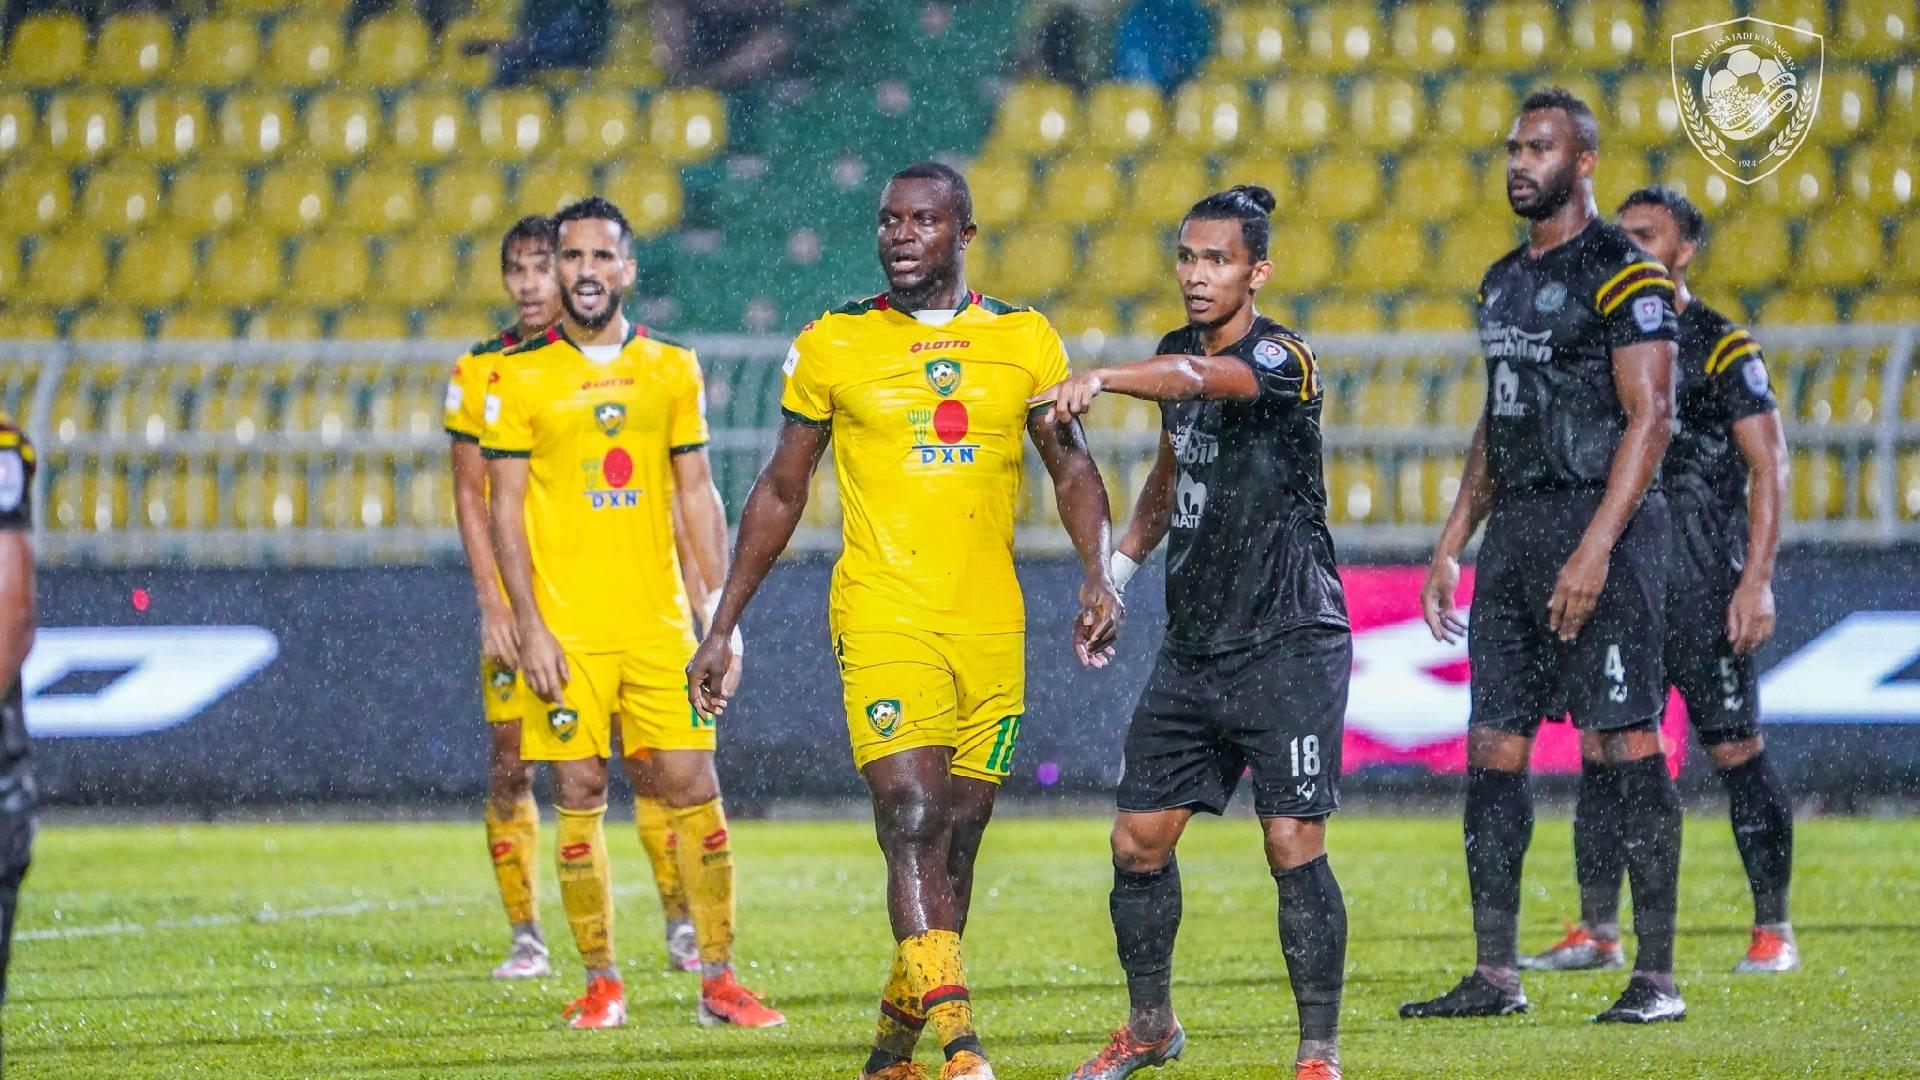 Kedah Negeri Sembilan 1 Piala Malaysia: Negeri Sembilan Jinakkan Kedah Di Darul Aman